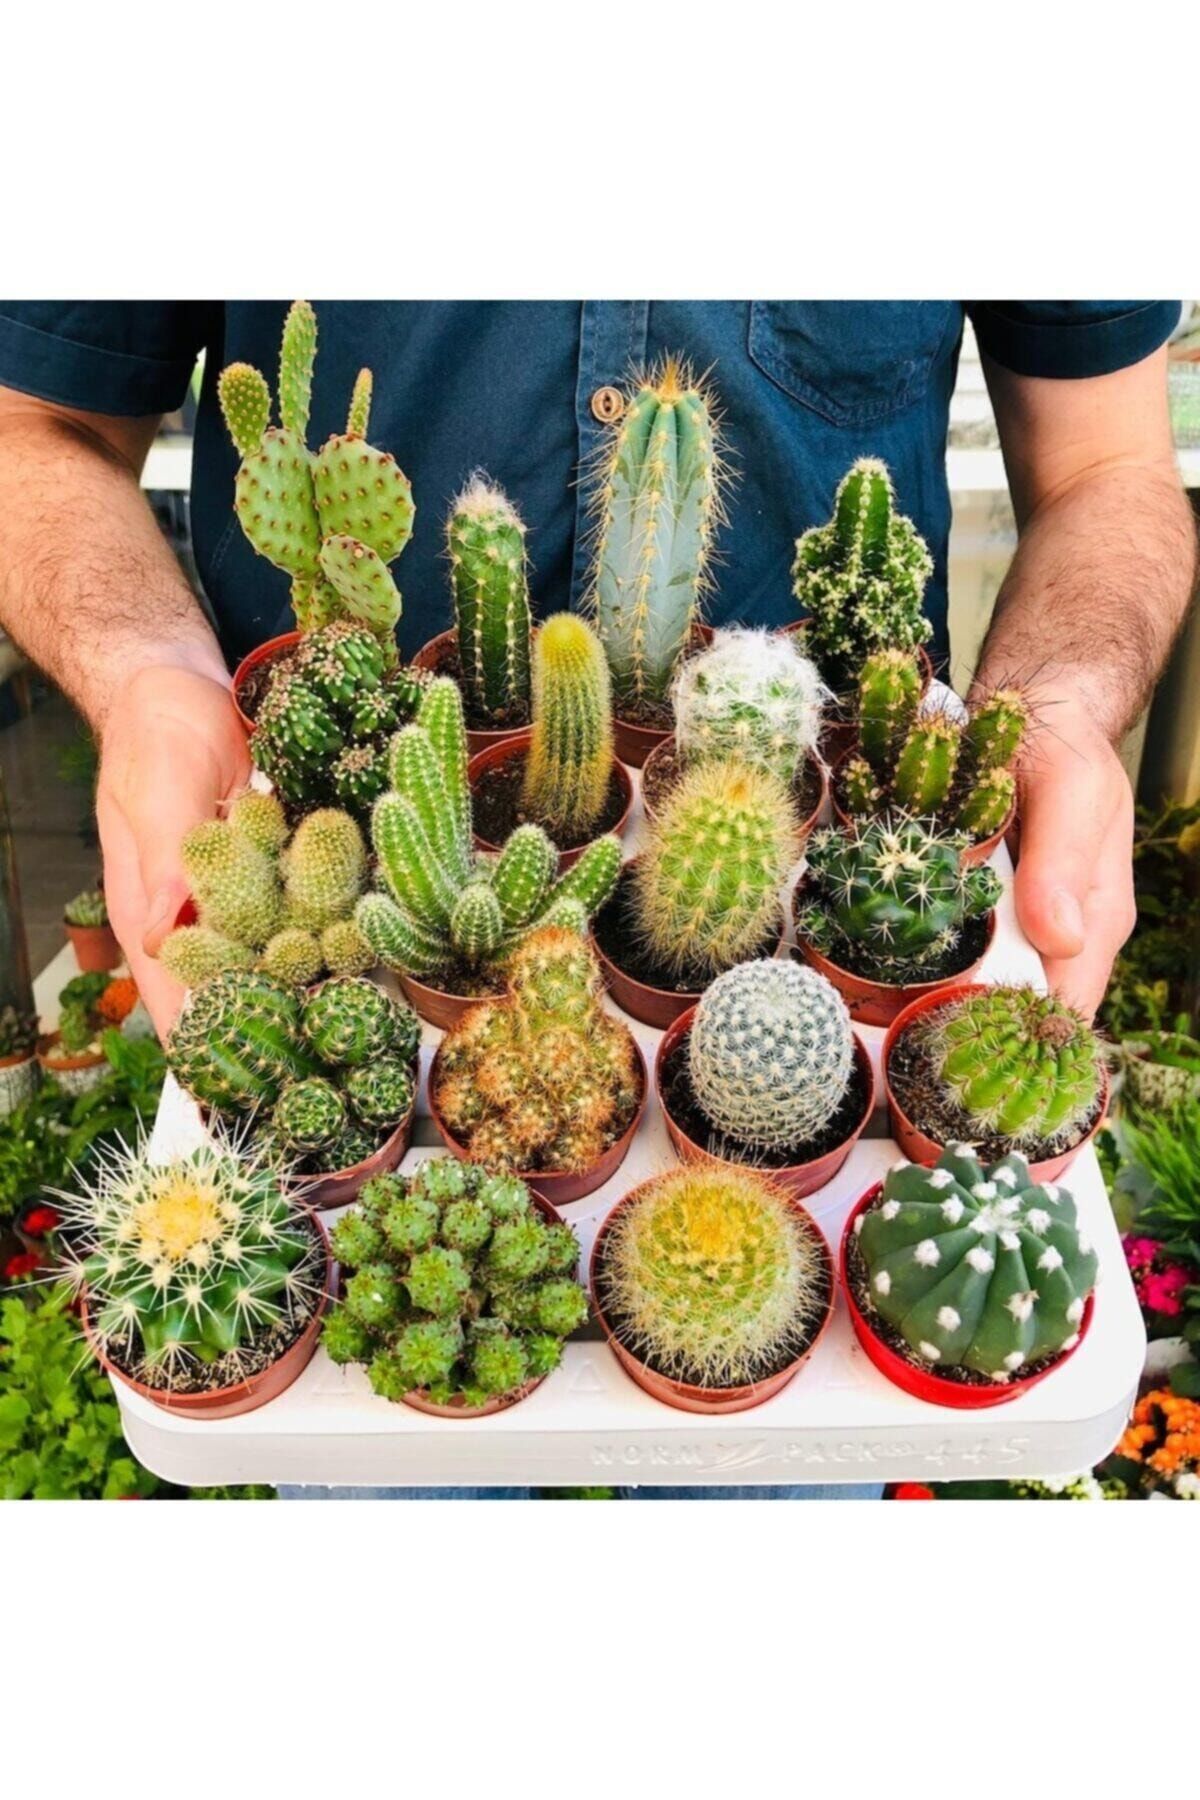 EGZOTİKBAHÇE Kaktüs Seti 10 Adet Farklı Cactus Mix Dolgun Formlu Çeşit